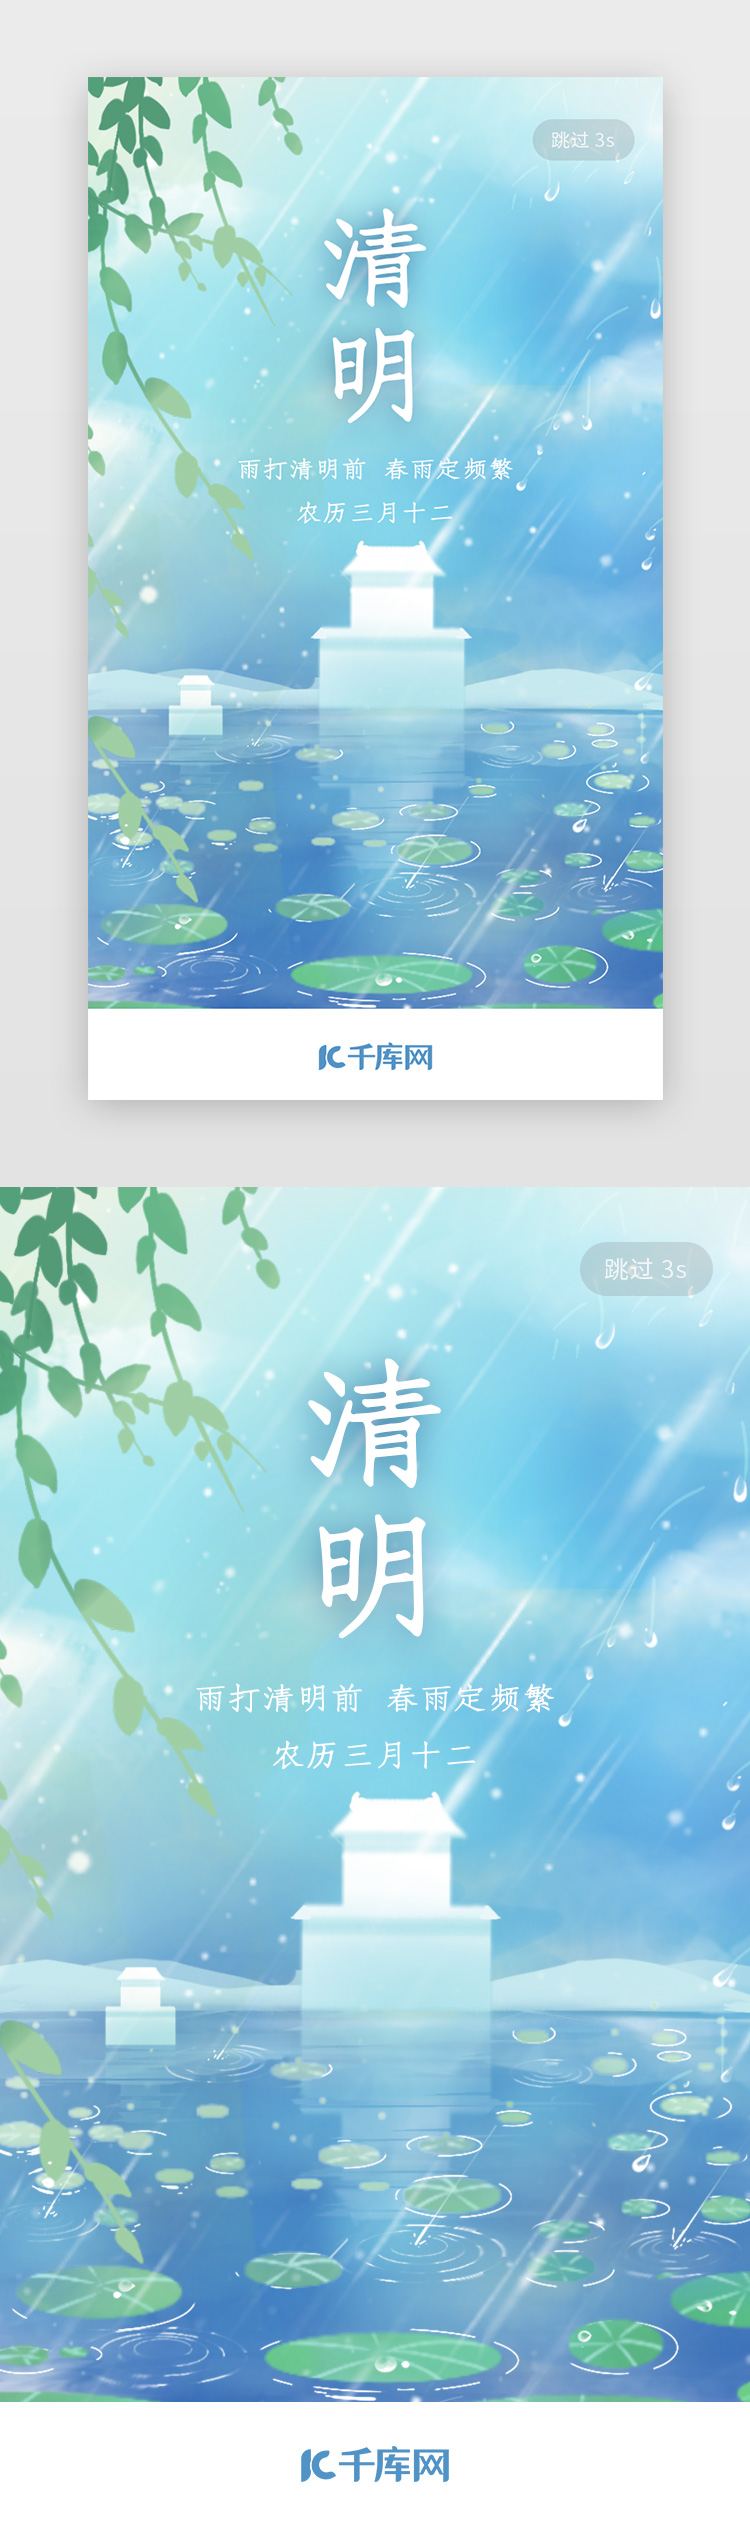 传统节日清明节app闪屏图片